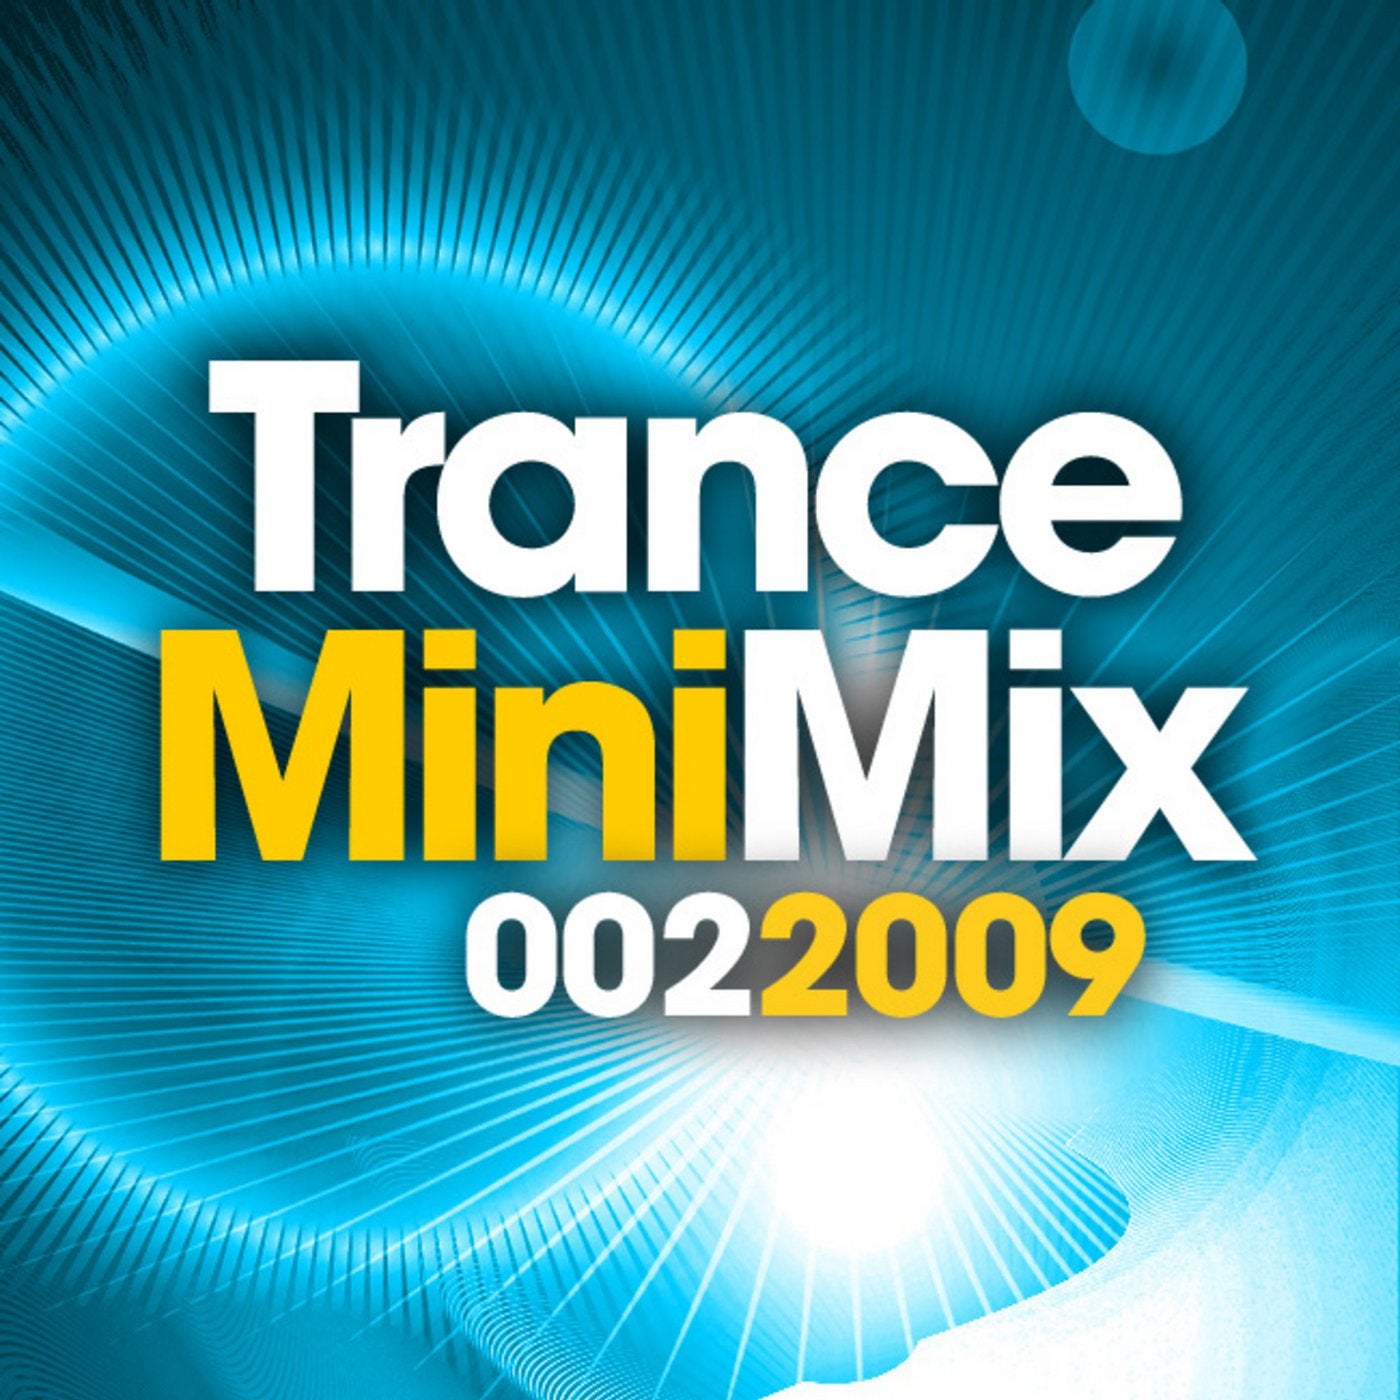 Trance Mini Mix 002 - 2009